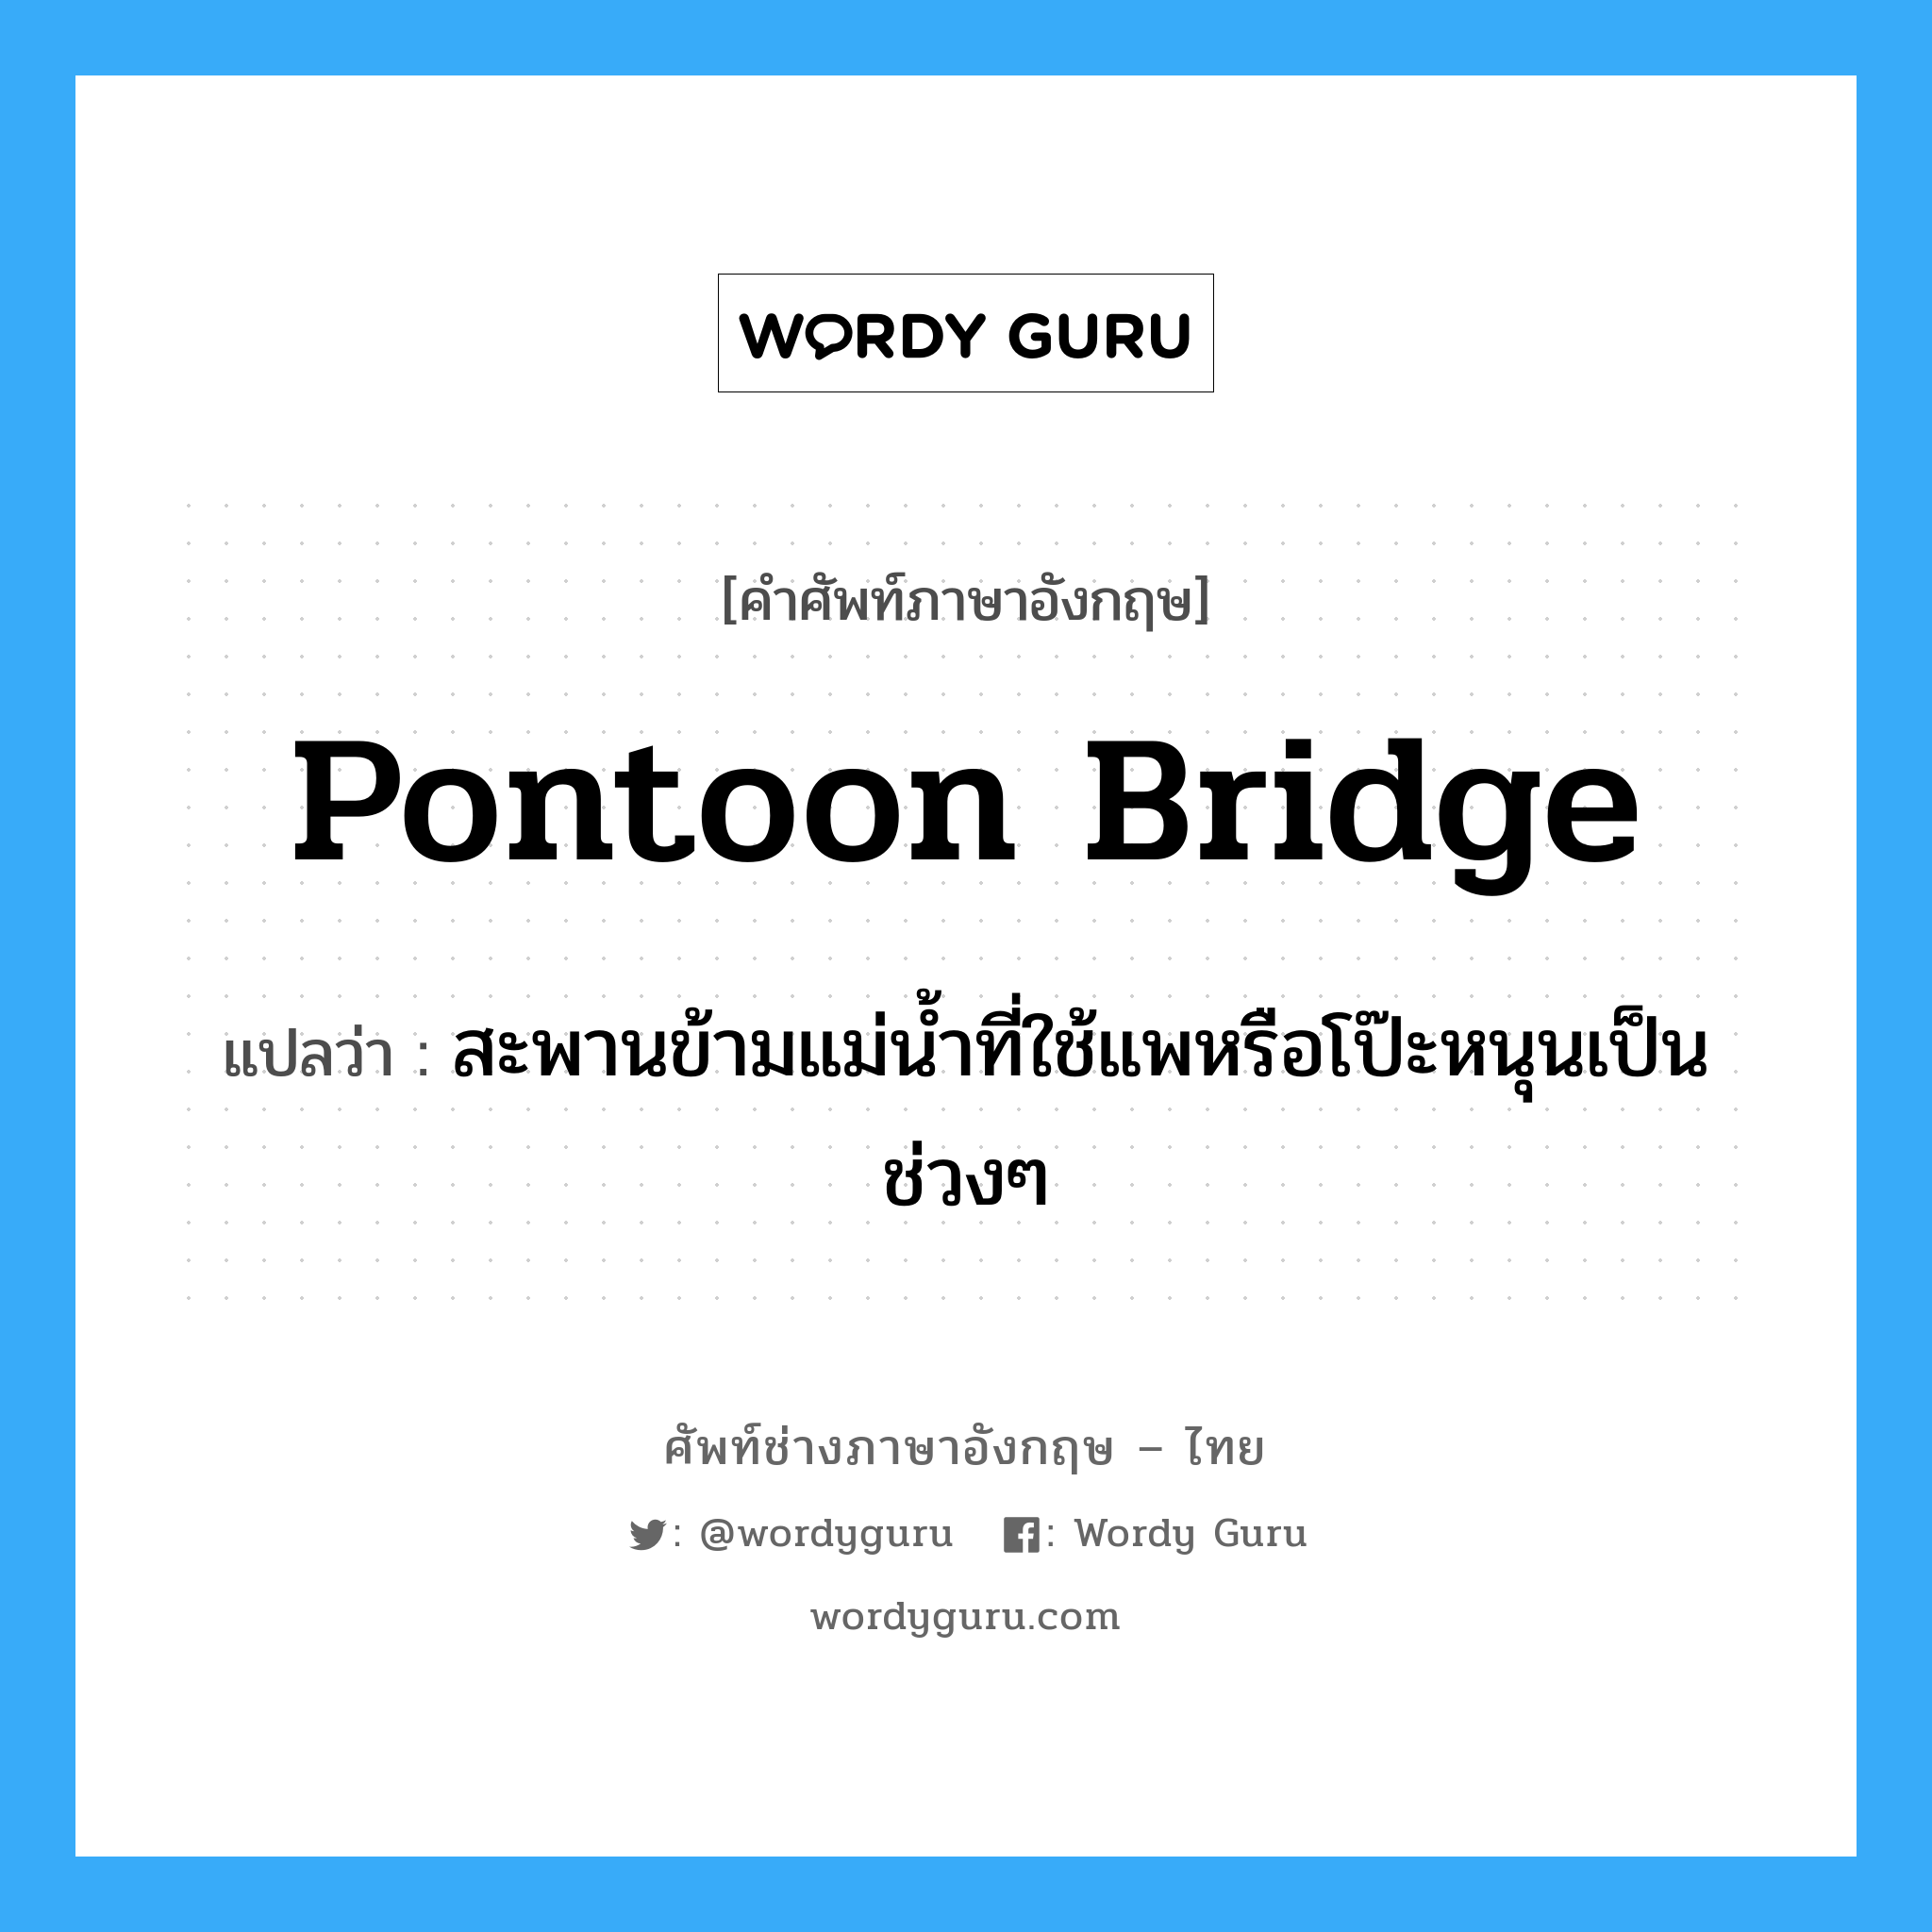 pontoon bridge แปลว่า?, คำศัพท์ช่างภาษาอังกฤษ - ไทย pontoon bridge คำศัพท์ภาษาอังกฤษ pontoon bridge แปลว่า สะพานข้ามแม่น้ำที่ใช้แพหรือโป๊ะหนุนเป็นช่วงๆ